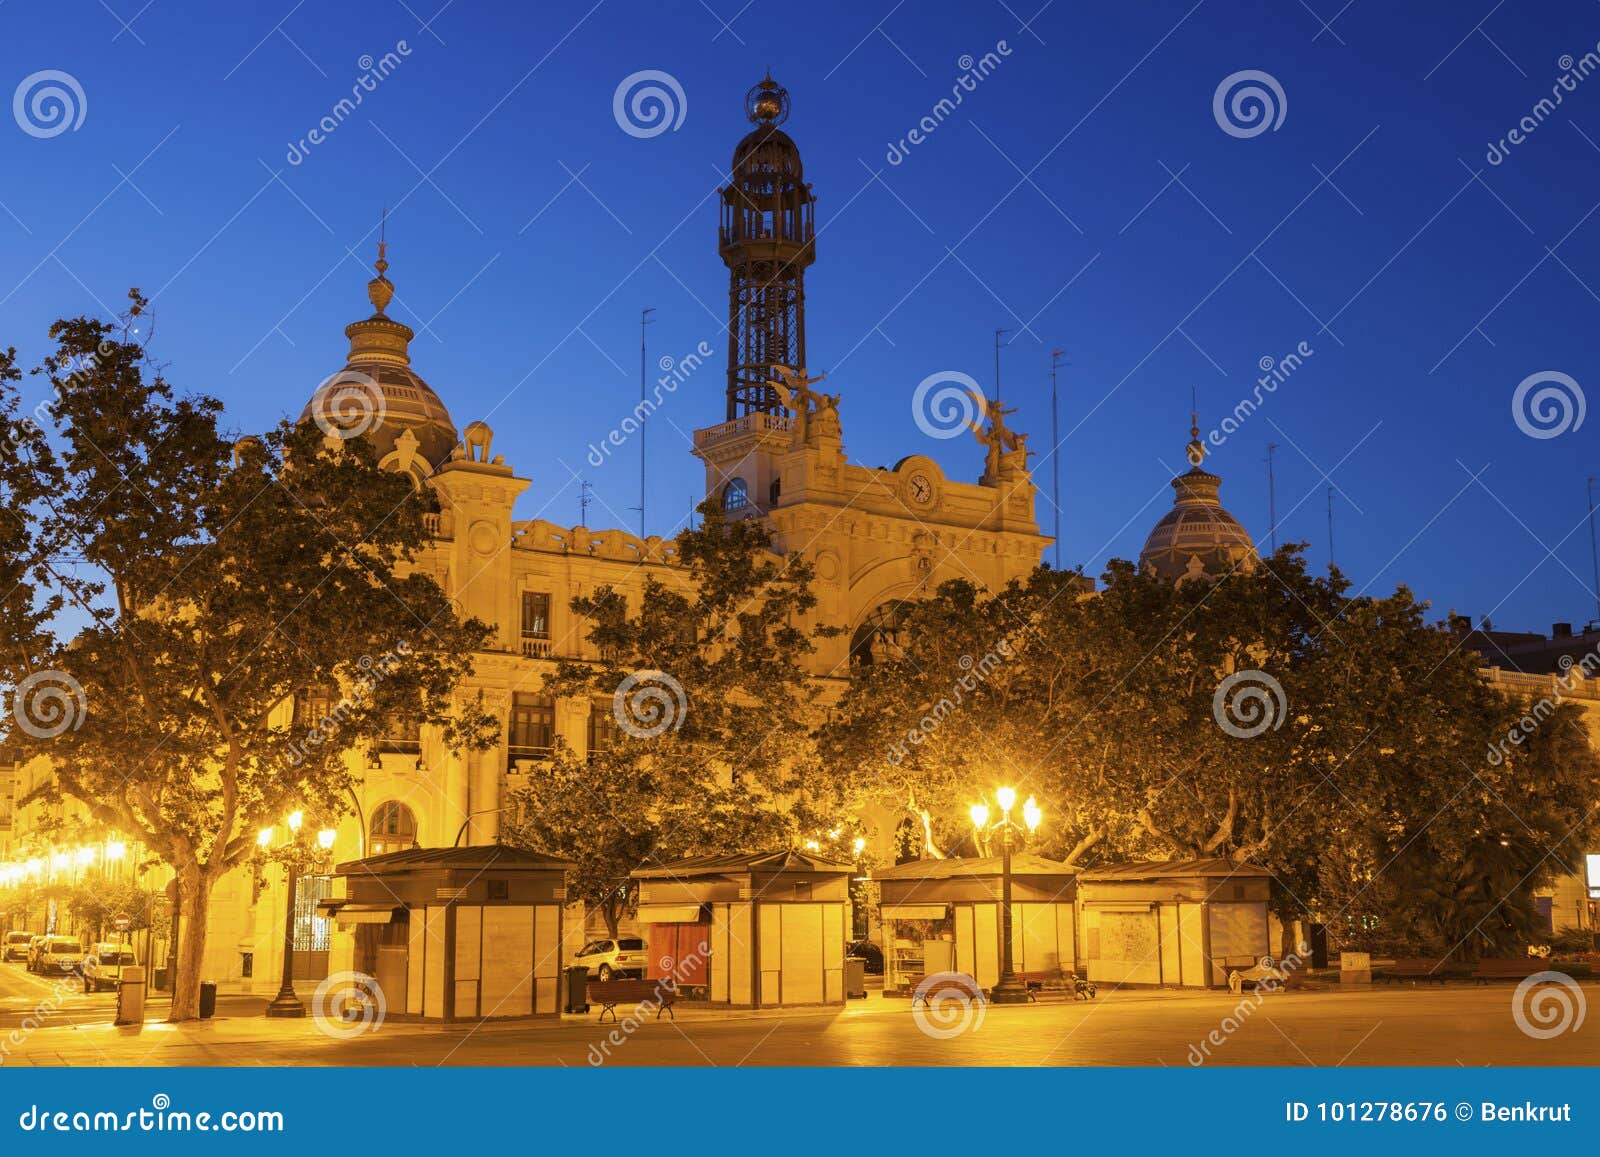 plaza del ayuntamiento in valencia